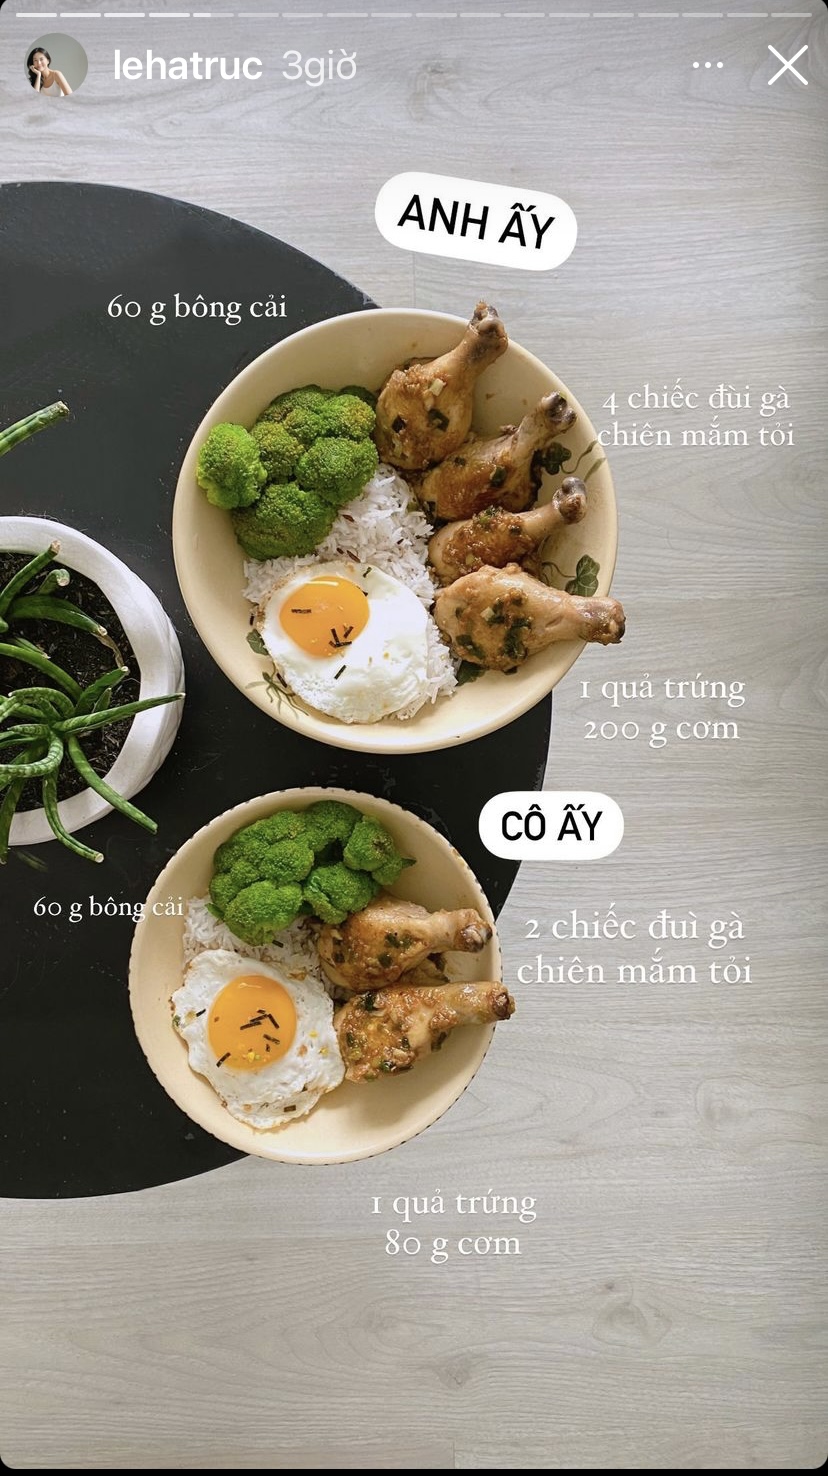 Không chỉ tỉ mỉ trình bày đĩa đồ ăn, Hà Trúc còn cẩn thận cân khối lượng để có một bữa cơm healthy nhất có thể. Travel blogger này hôm nay có cơm ăn kèm trứng, bông cải và đùi gà chiên mắm tỏi.